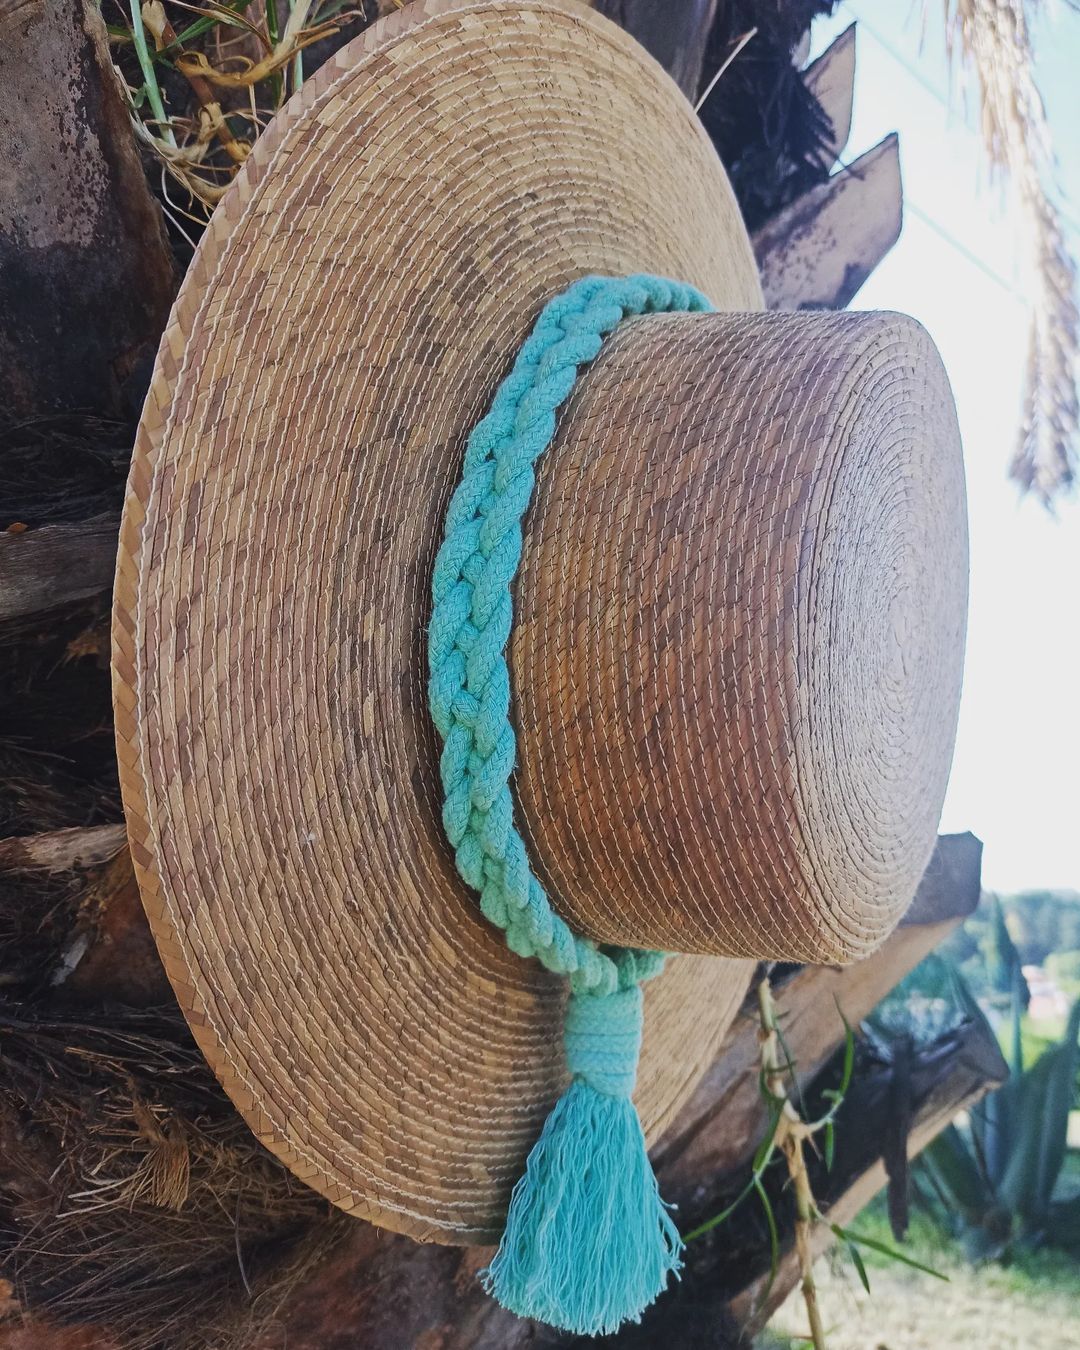 Sombrero de palma ala plana; aplicación con técnica de macramé en cordón de algodón turquesa.